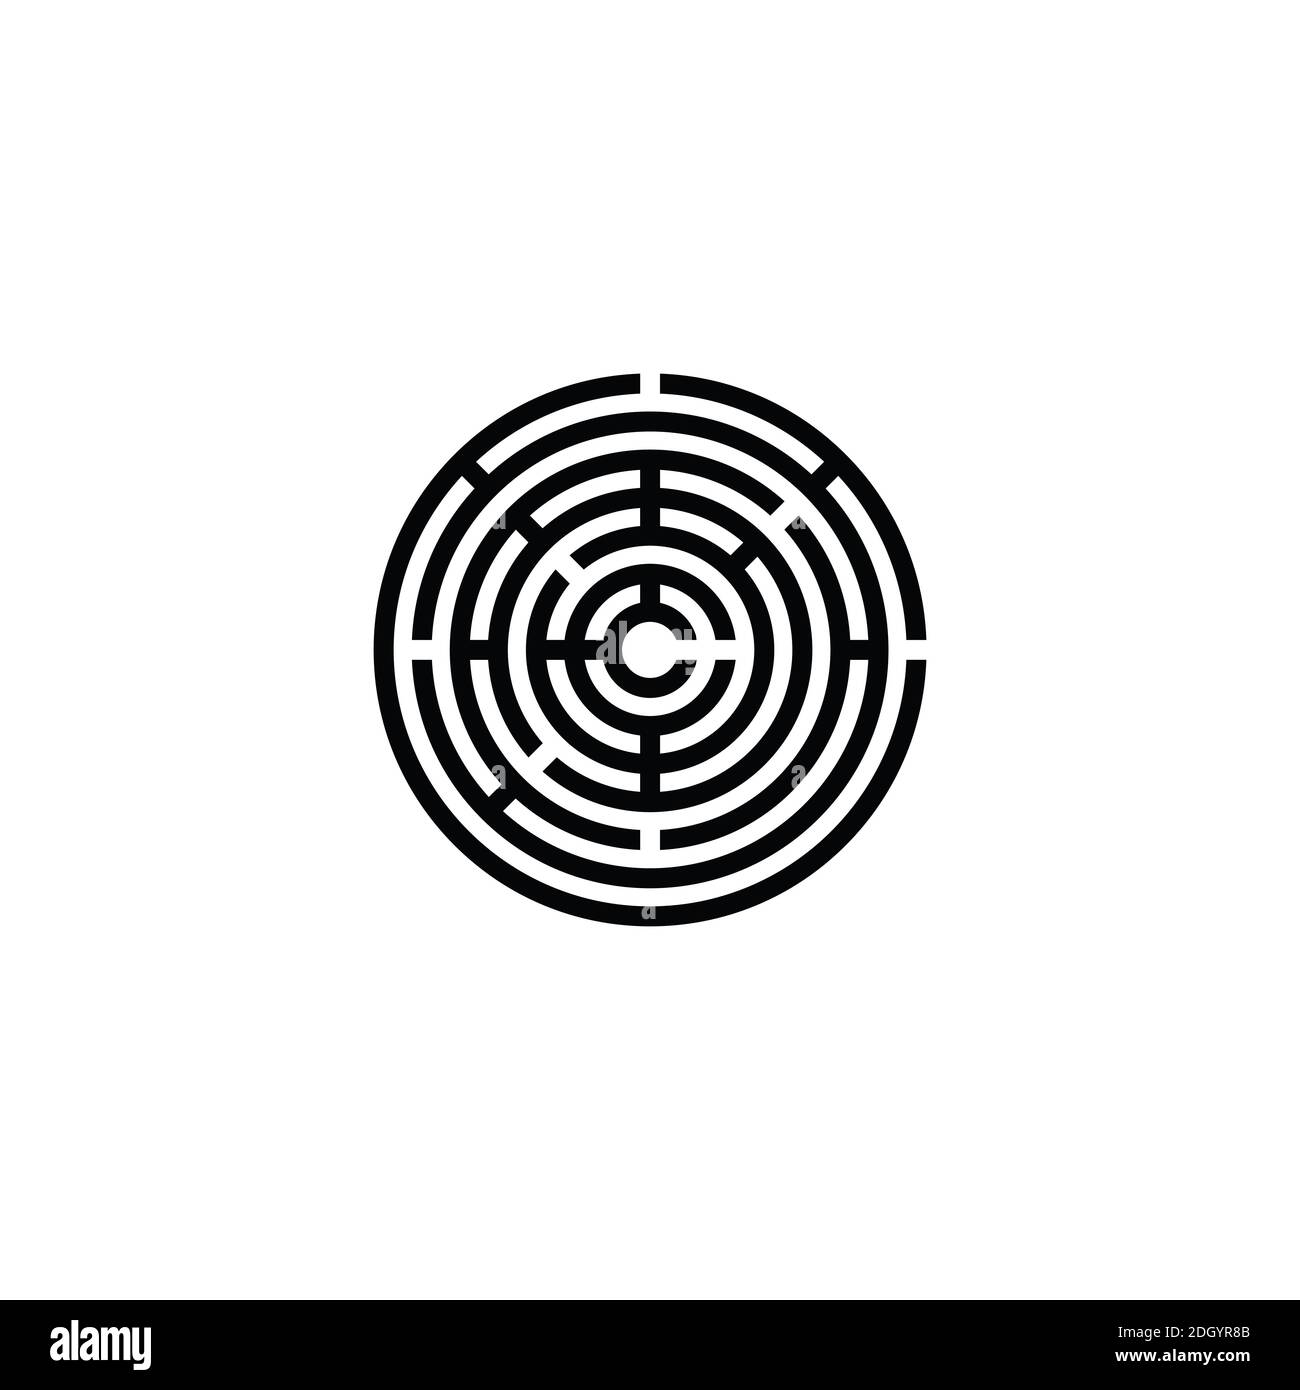 Black maze circle icon symbol logo design Stock Vector